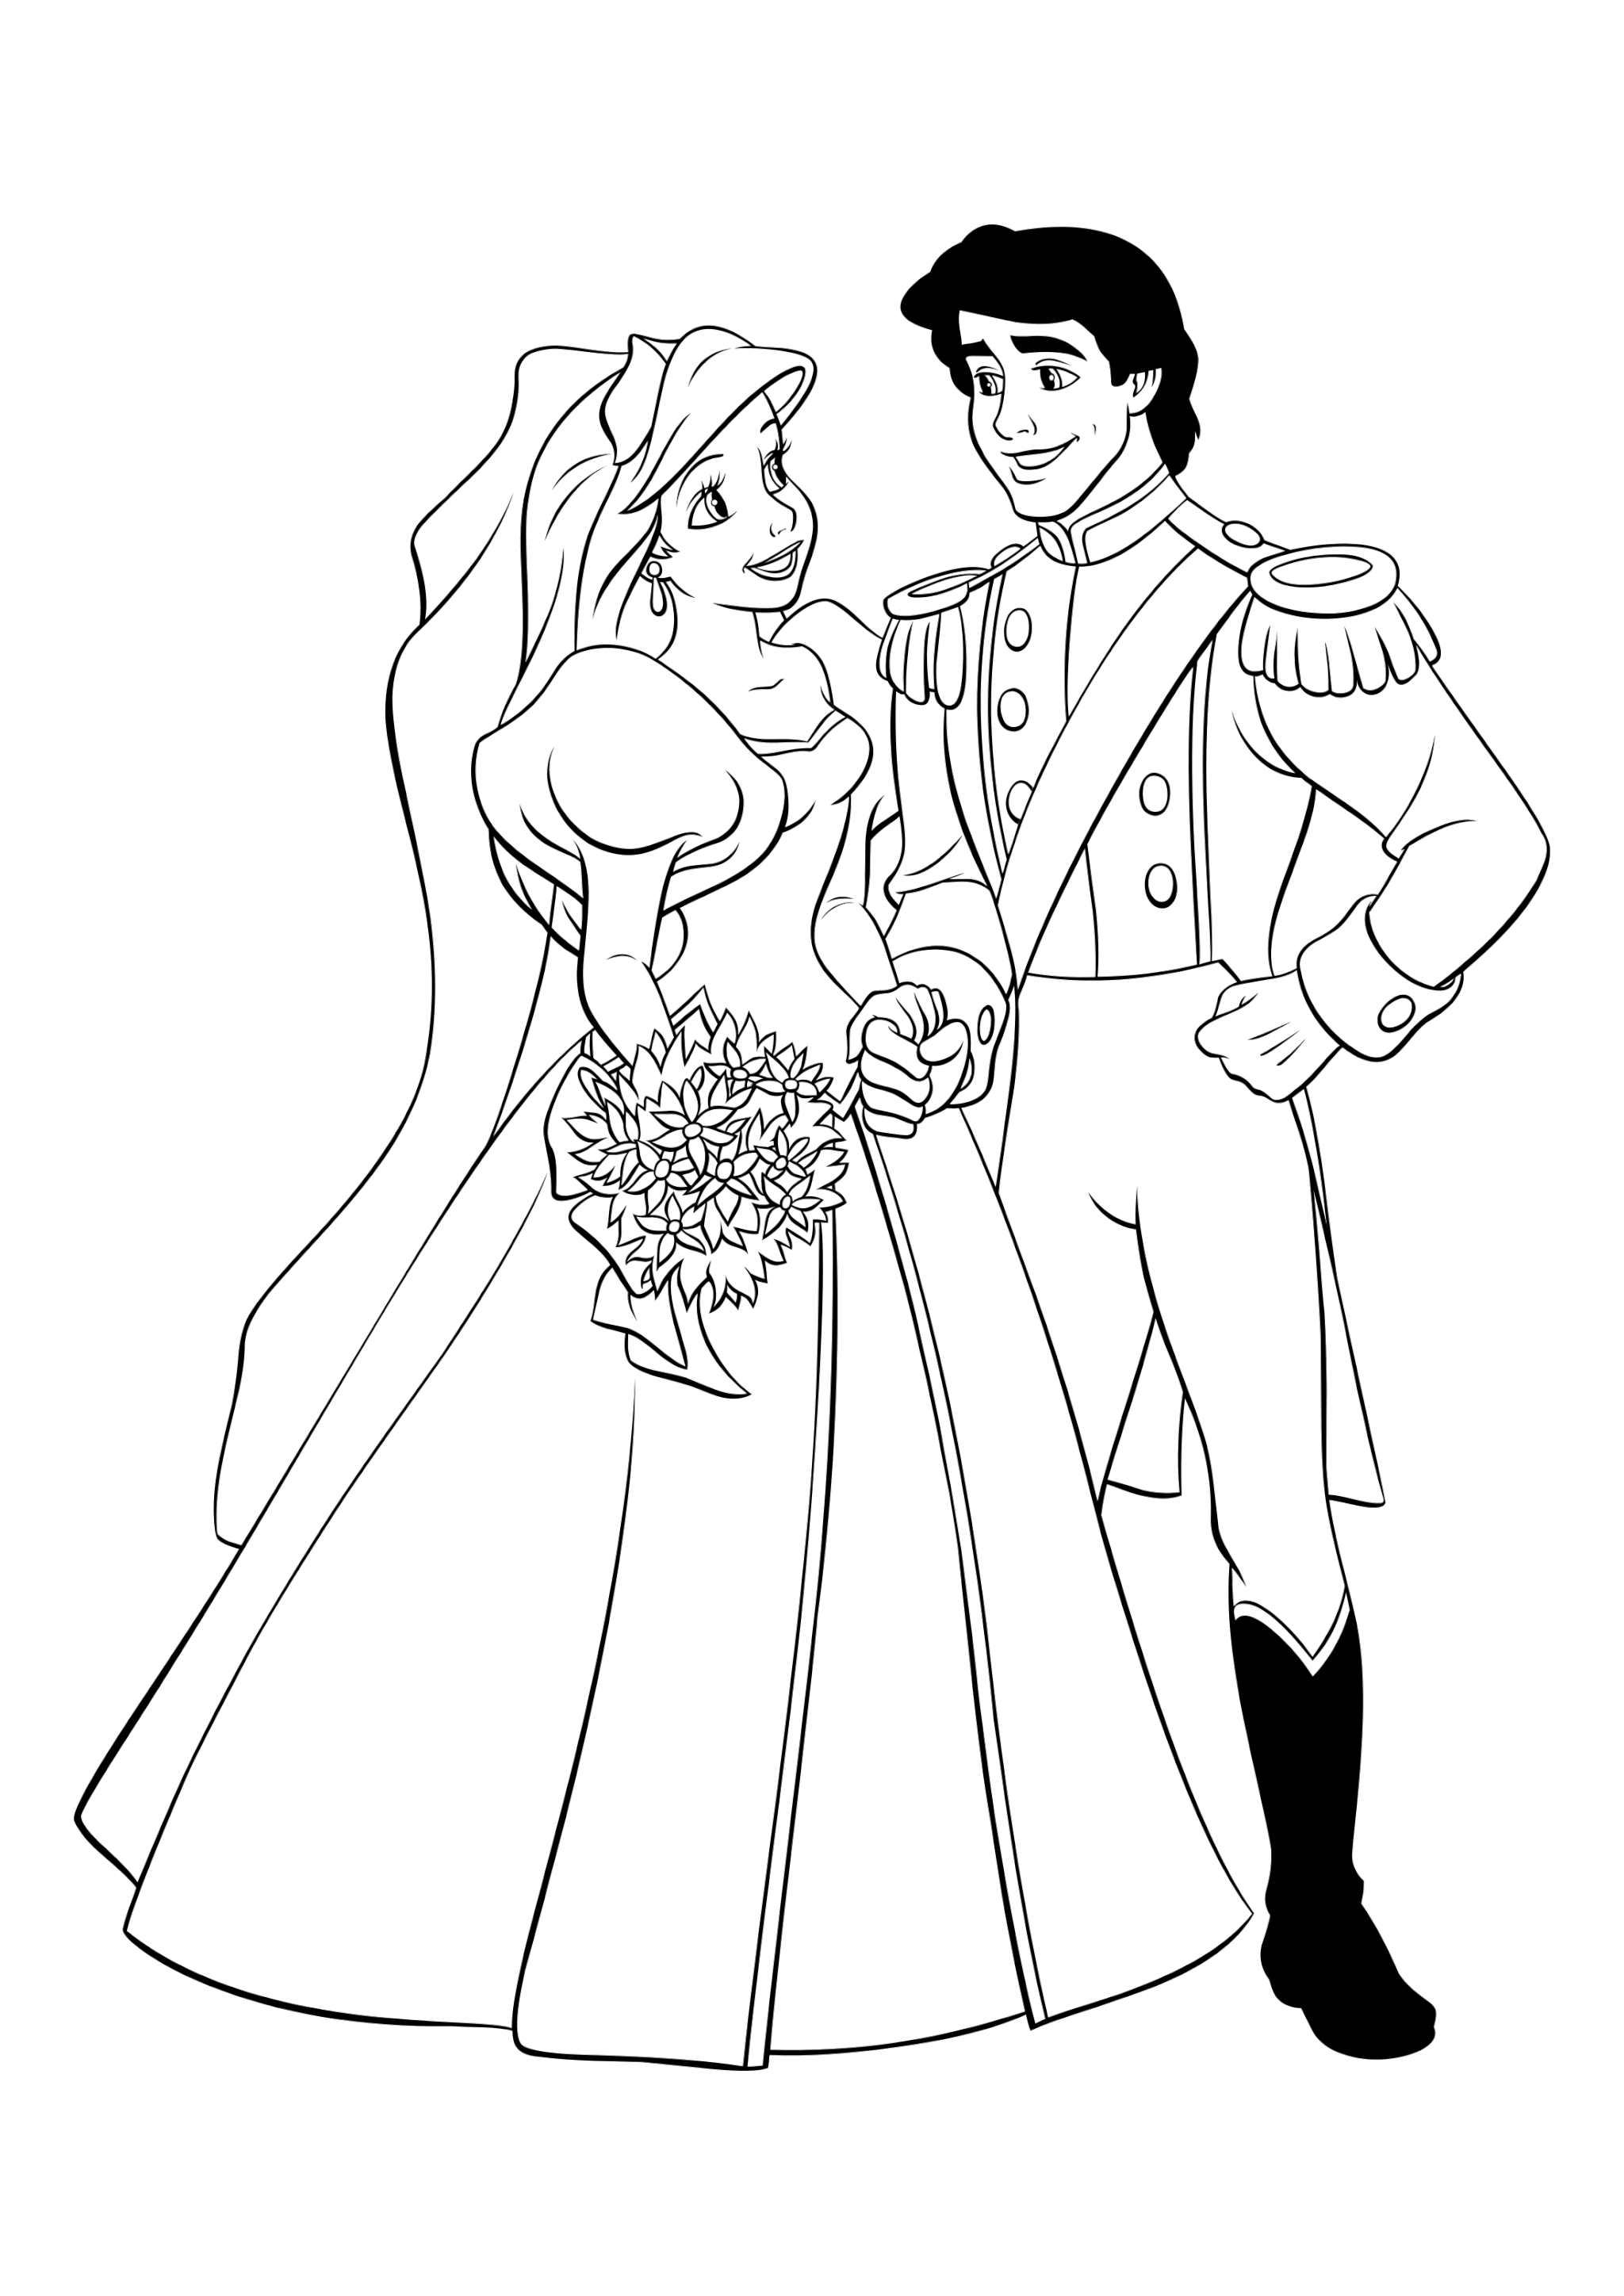 Раскраска Принц Эрик и Принцесса Ариэль.